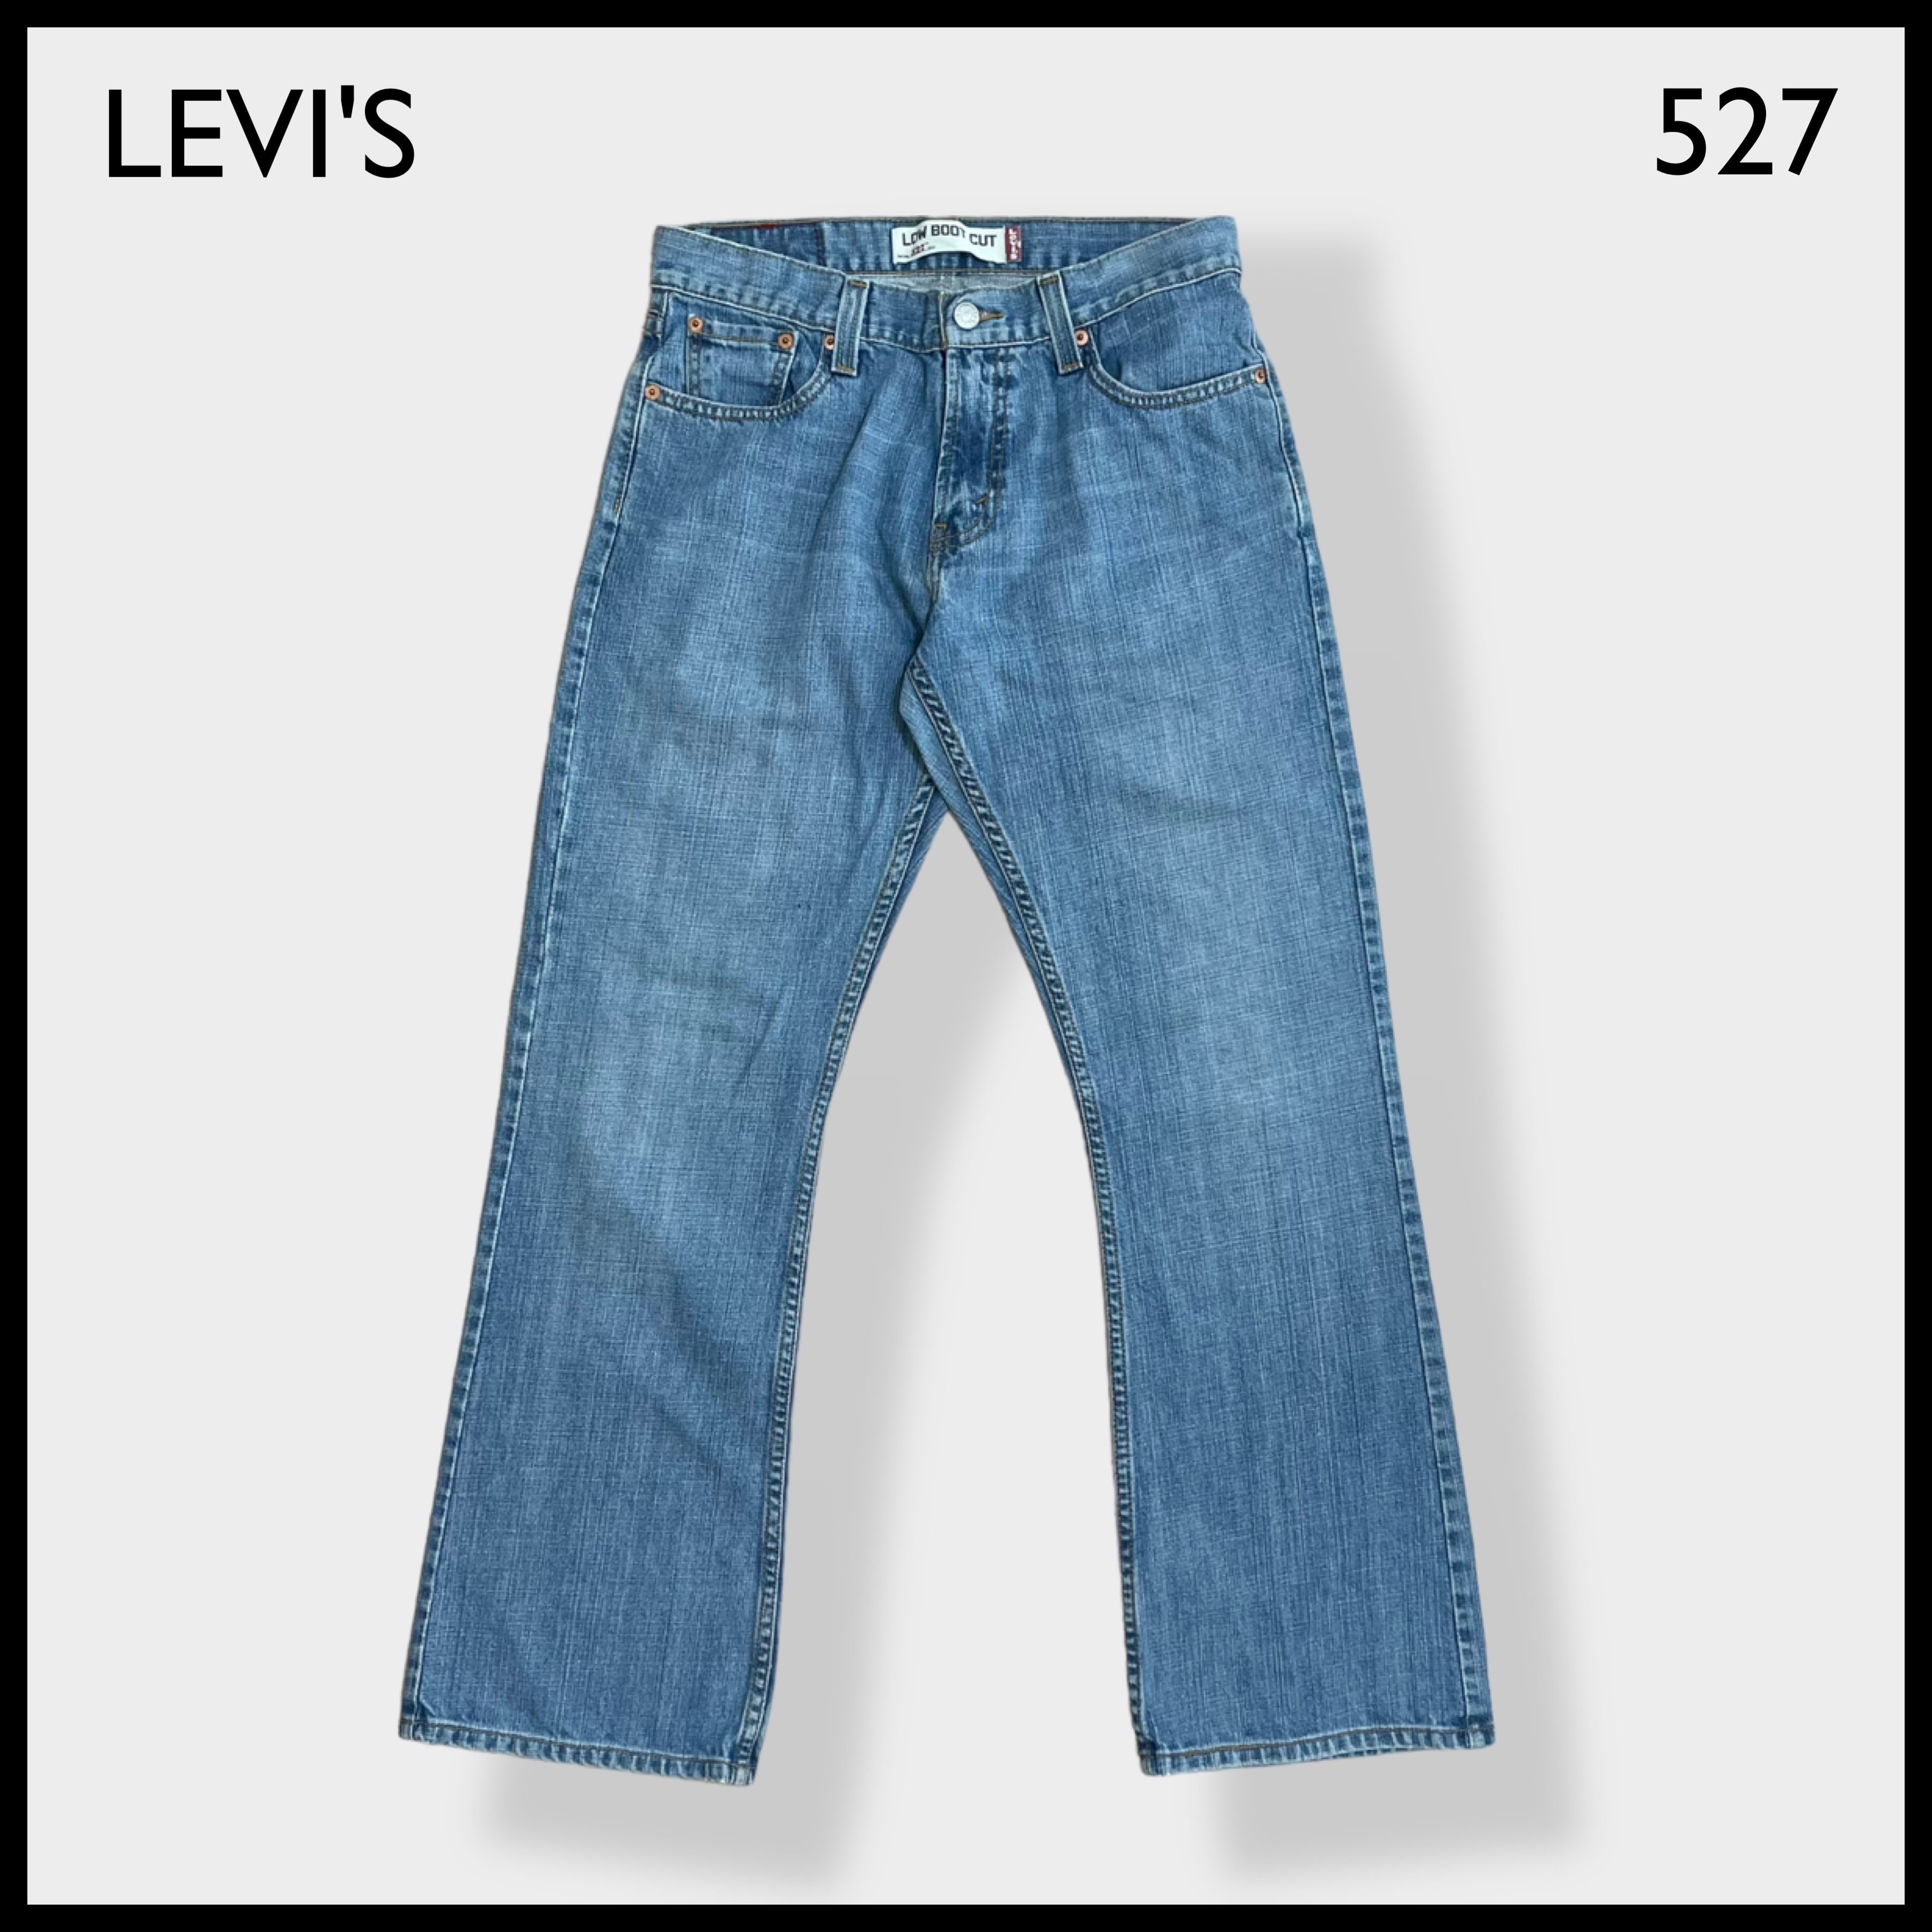 LEVI'S】527 デニム ジーパン ジーンズ ブーツカット フレア